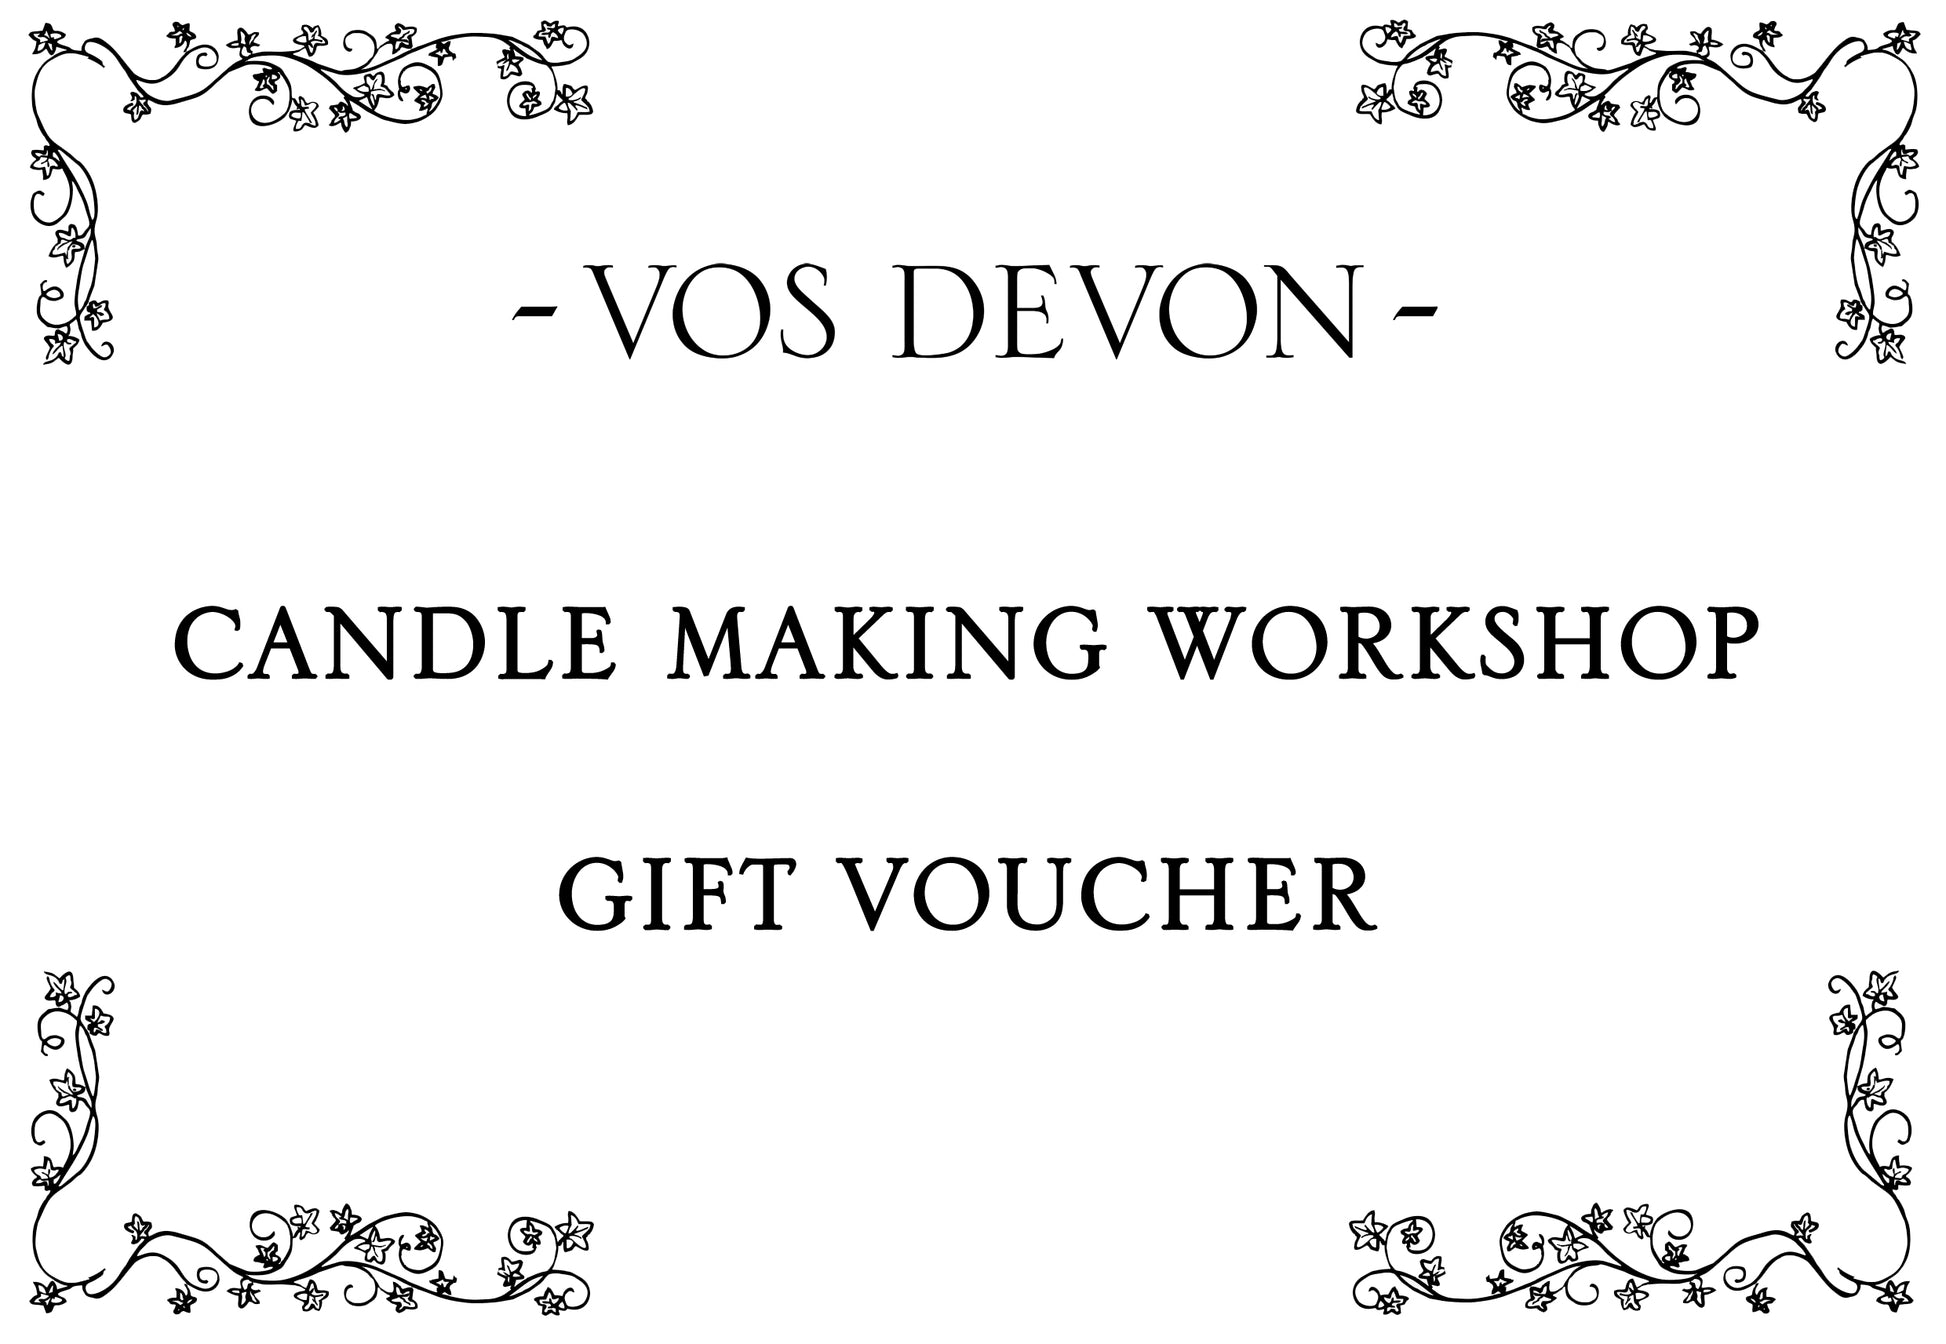 Candle_Workshop_Gift_Voucher_VOS_Devon